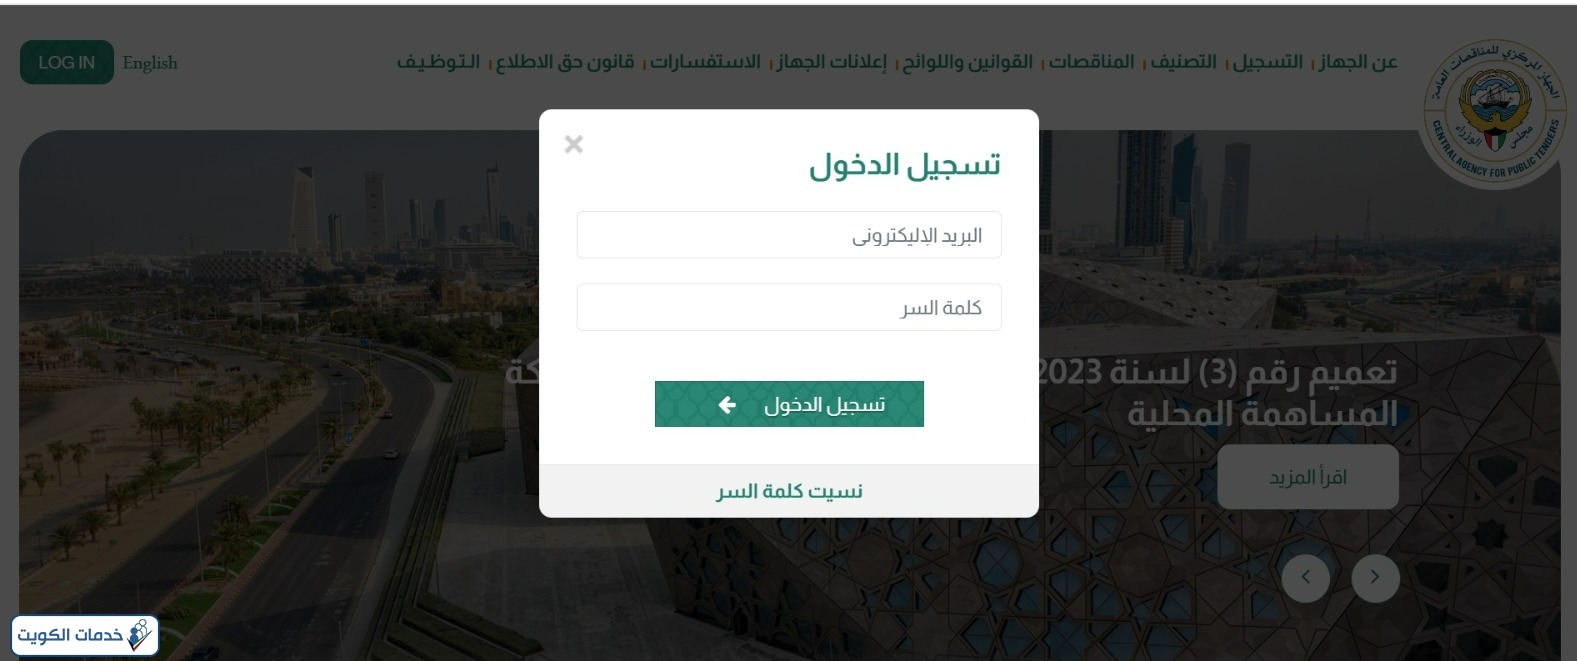 تسجيل دخول موقع لجنة المناقصات المركزية الكويت